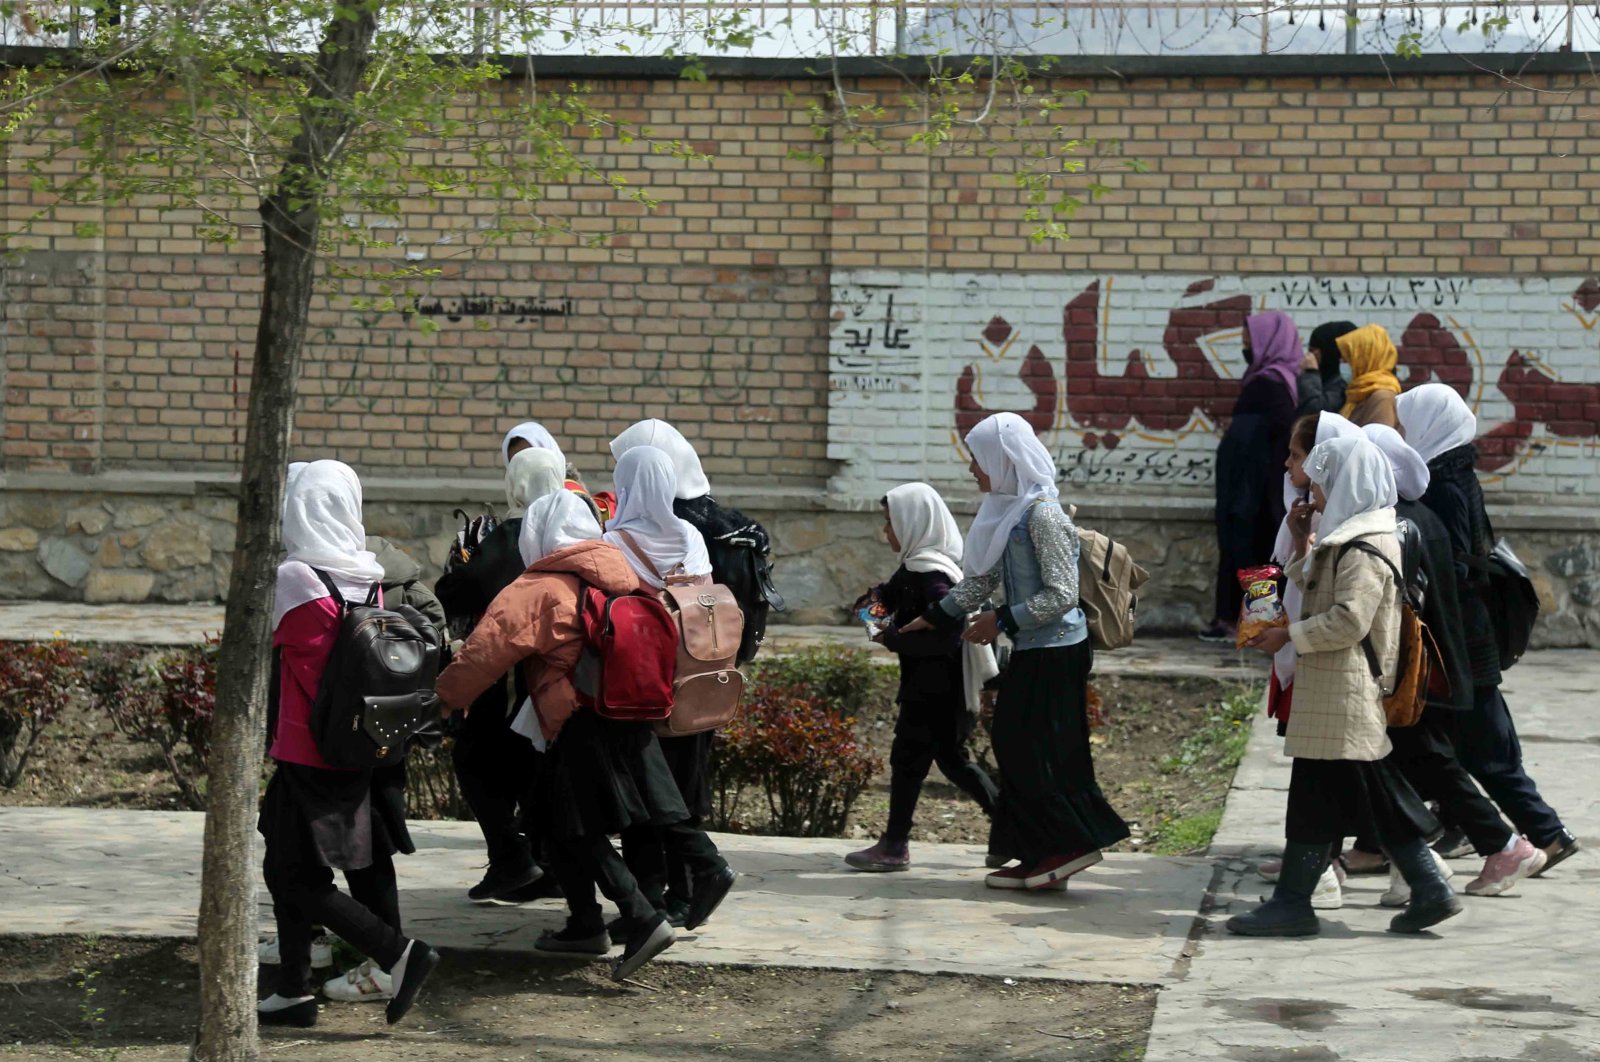 Lebih dari 80 gadis sekolah dirawat di rumah sakit setelah keracunan di Afghanistan